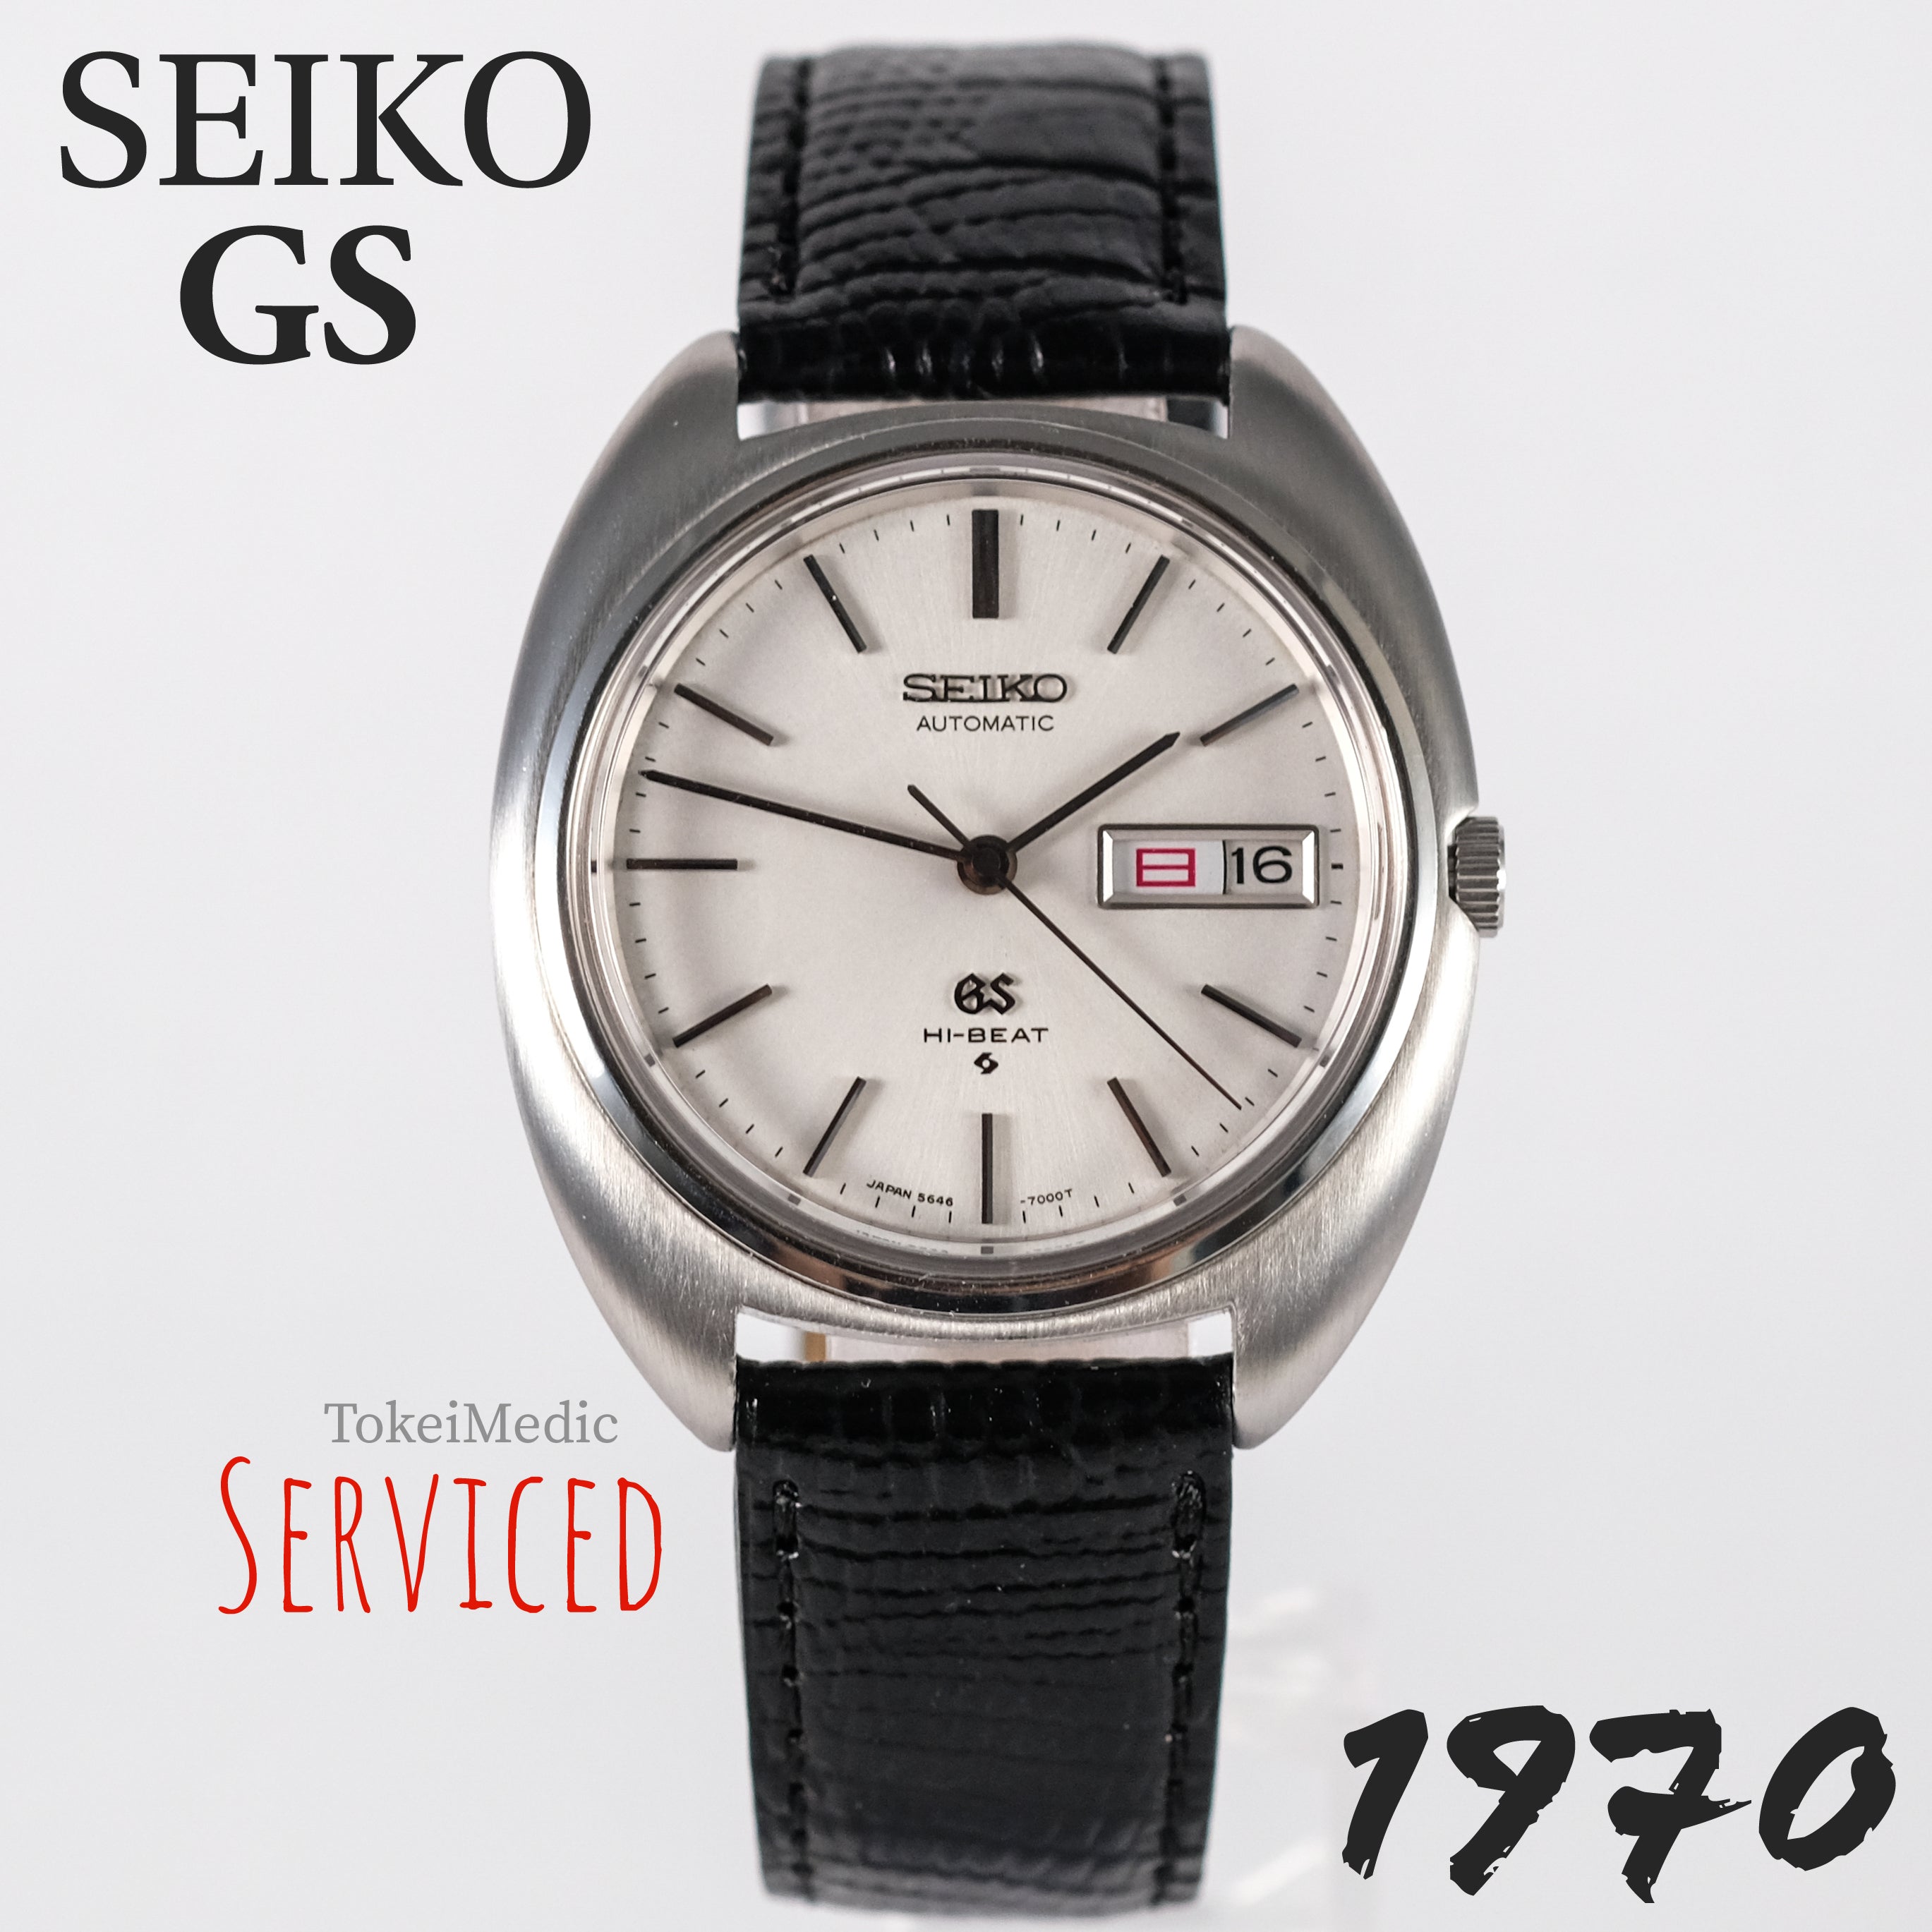 品質重視SEIKO グランドセイコー GS HI-BEAT 5646-7000 ハイビート グランドセイコー